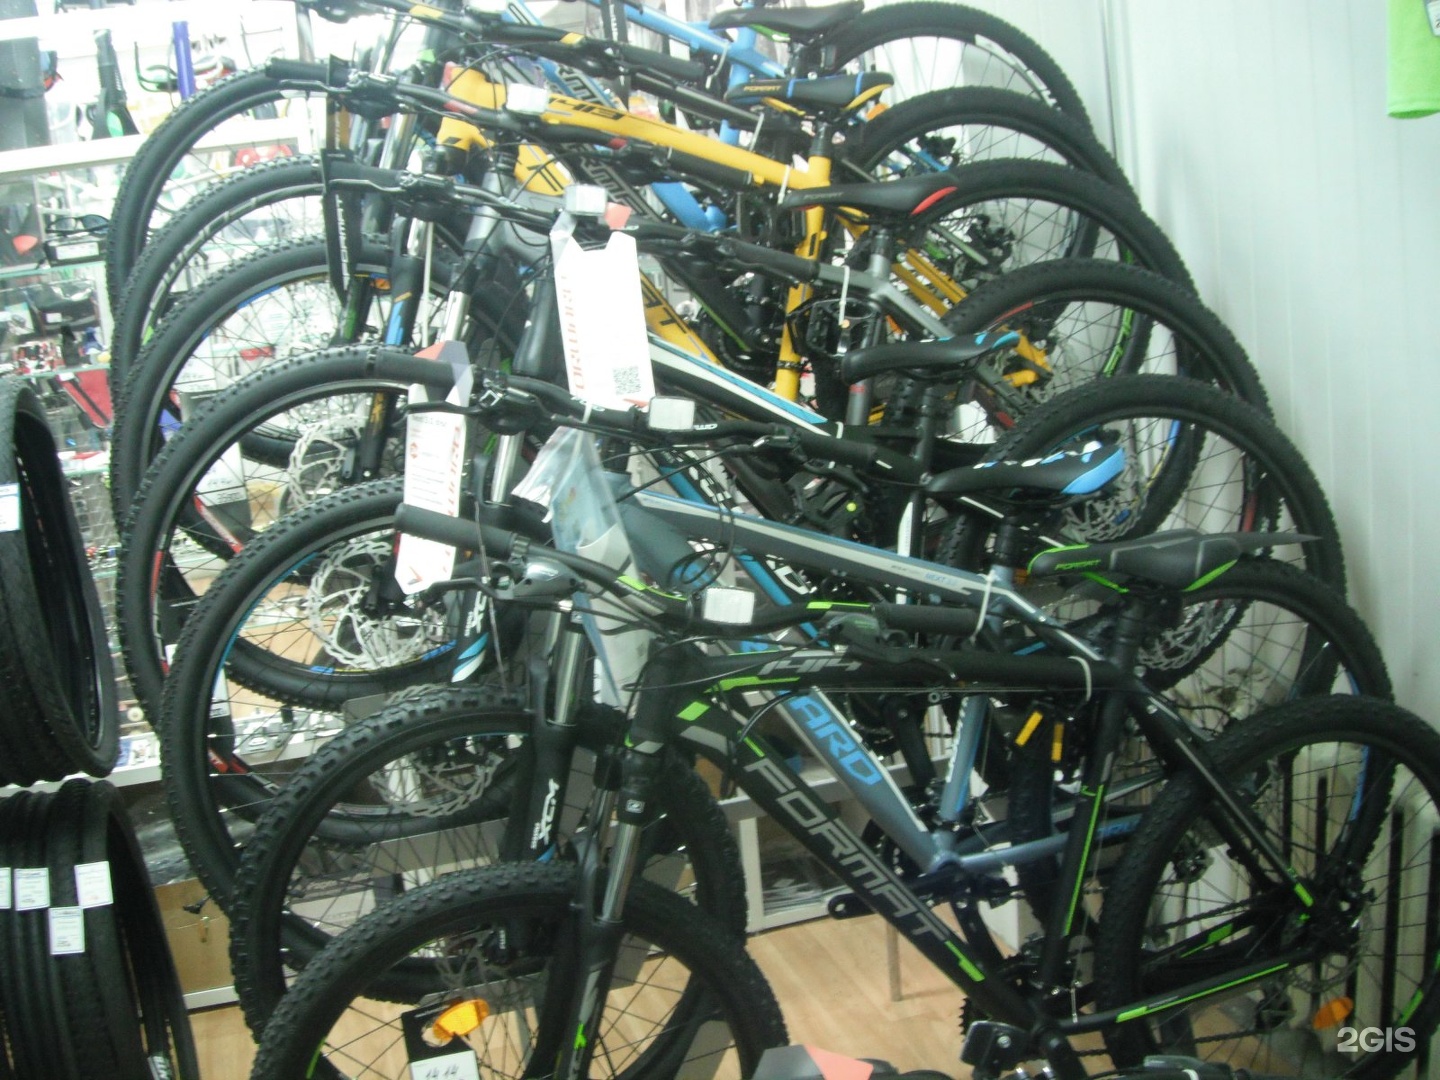 Купить велосипед в чебоксарах. Веломагазин Чебоксары Шумилова. Обслуживание велосипеда в Чебоксарах.